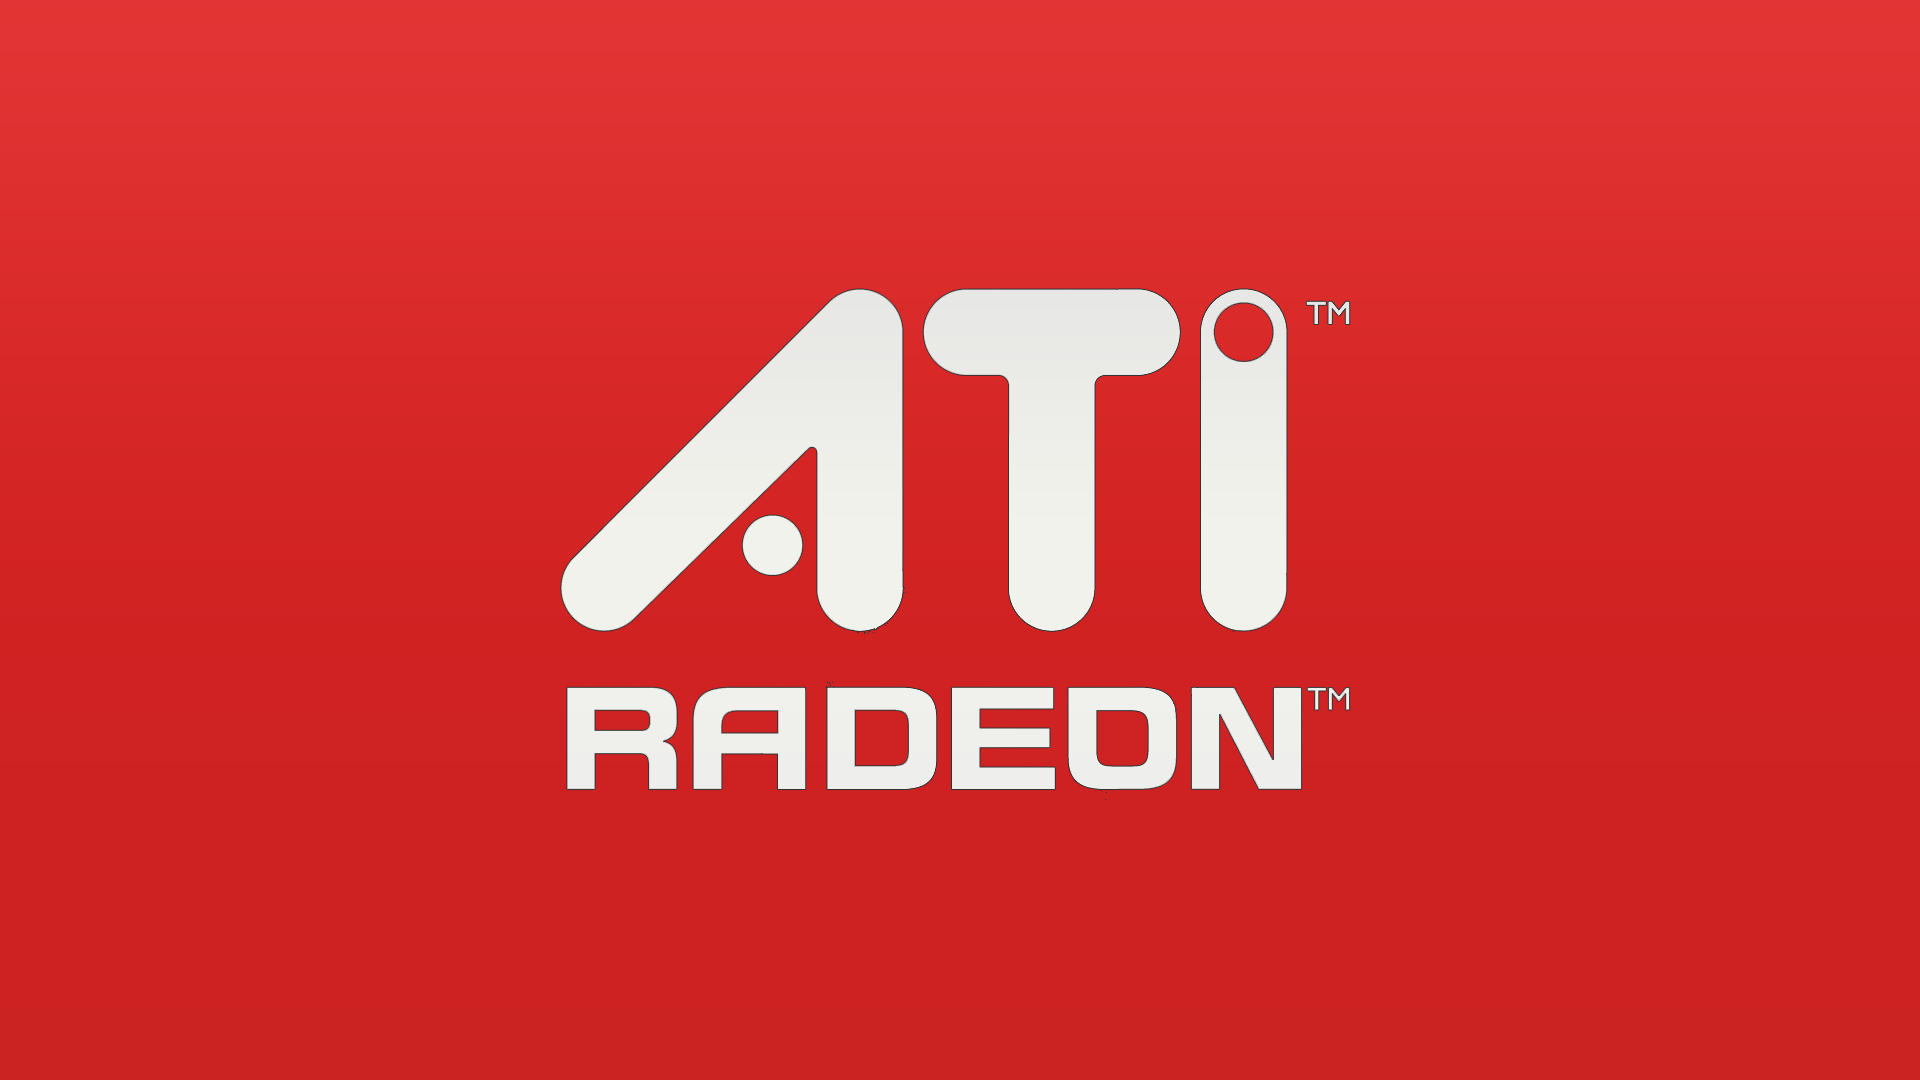 Ati Radeon Wallpaper Logos